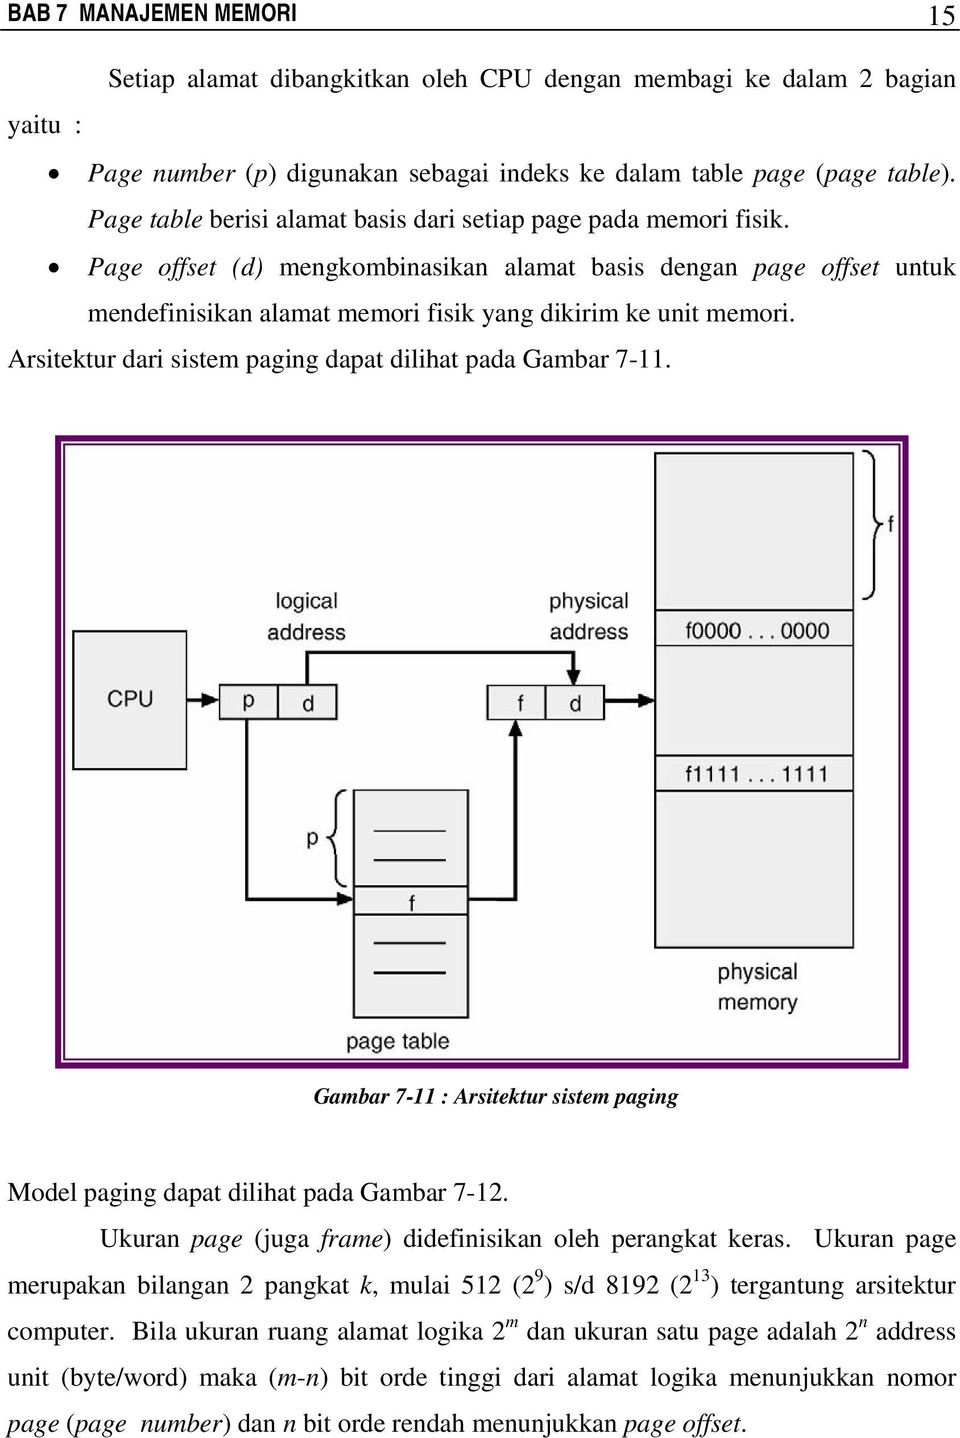 Page offset (d) mengkombinasikan alamat basis dengan page offset untuk mendefinisikan alamat memori fisik yang dikirim ke unit memori. Arsitektur dari sistem paging dapat dilihat pada Gambar 7-11.